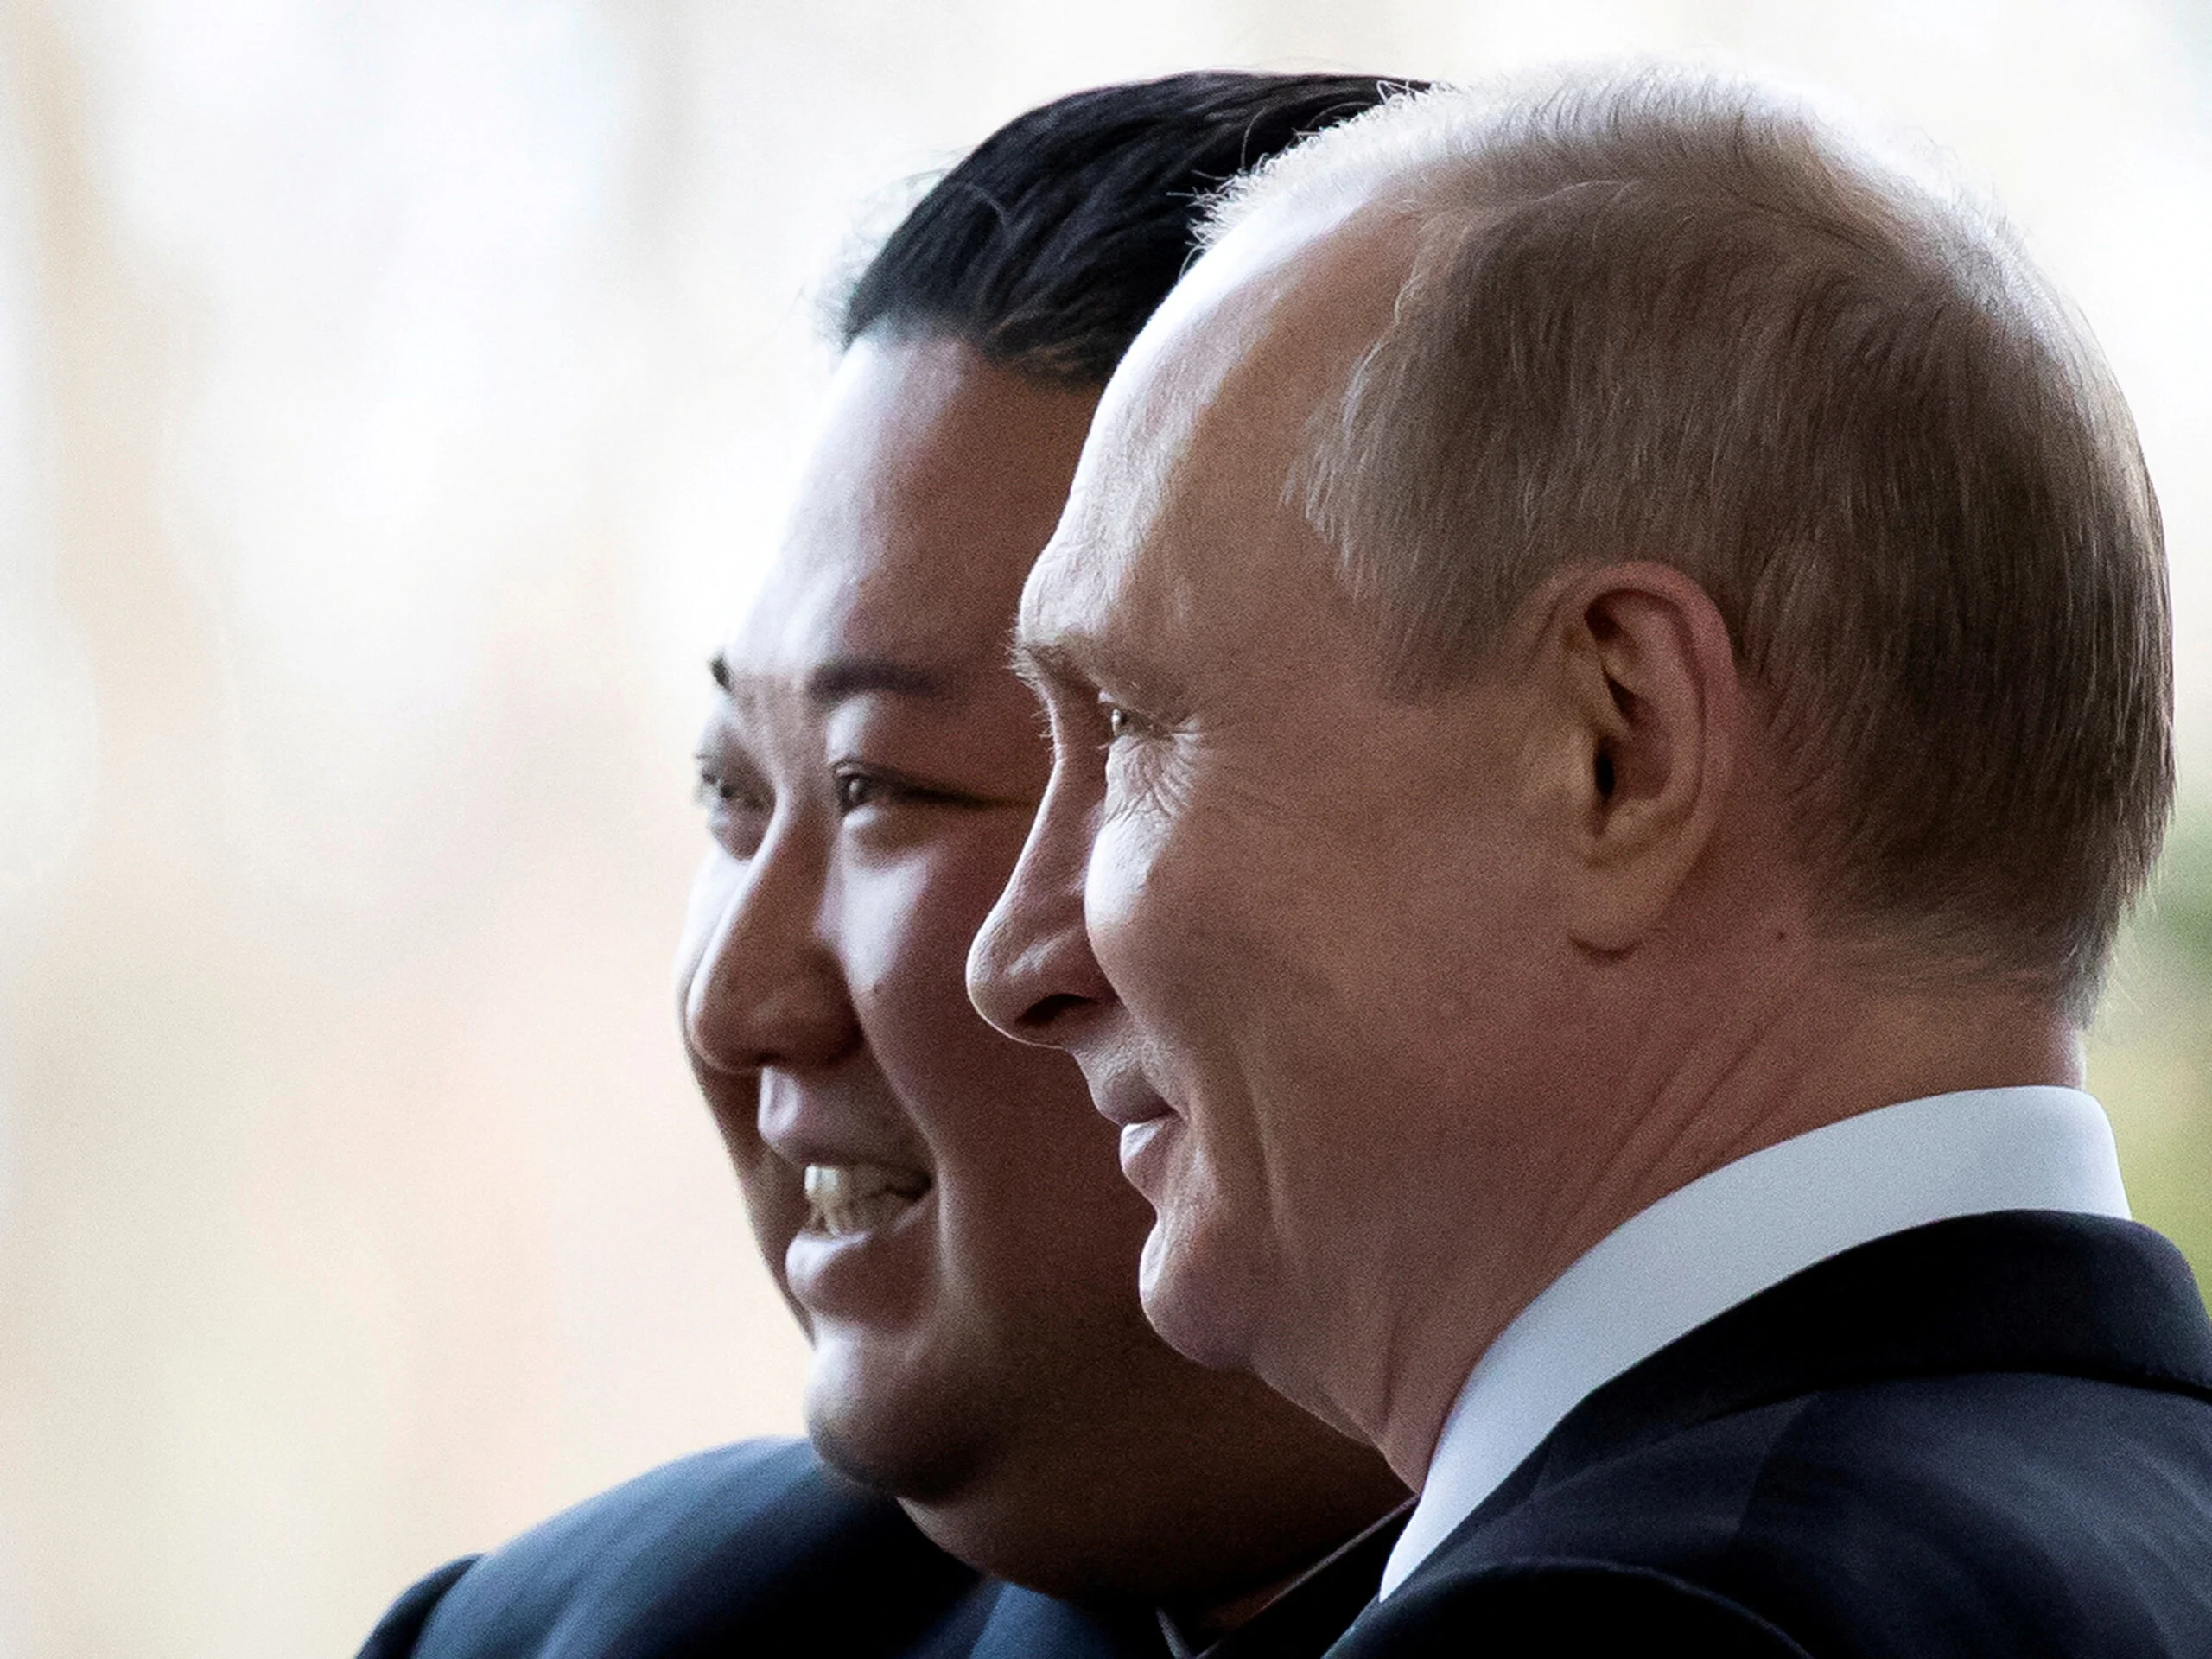 נשיא רוסיה ולדימיר פוטין לצד המנהיג העליון של צפון קוריאה קים ג'ונג-און